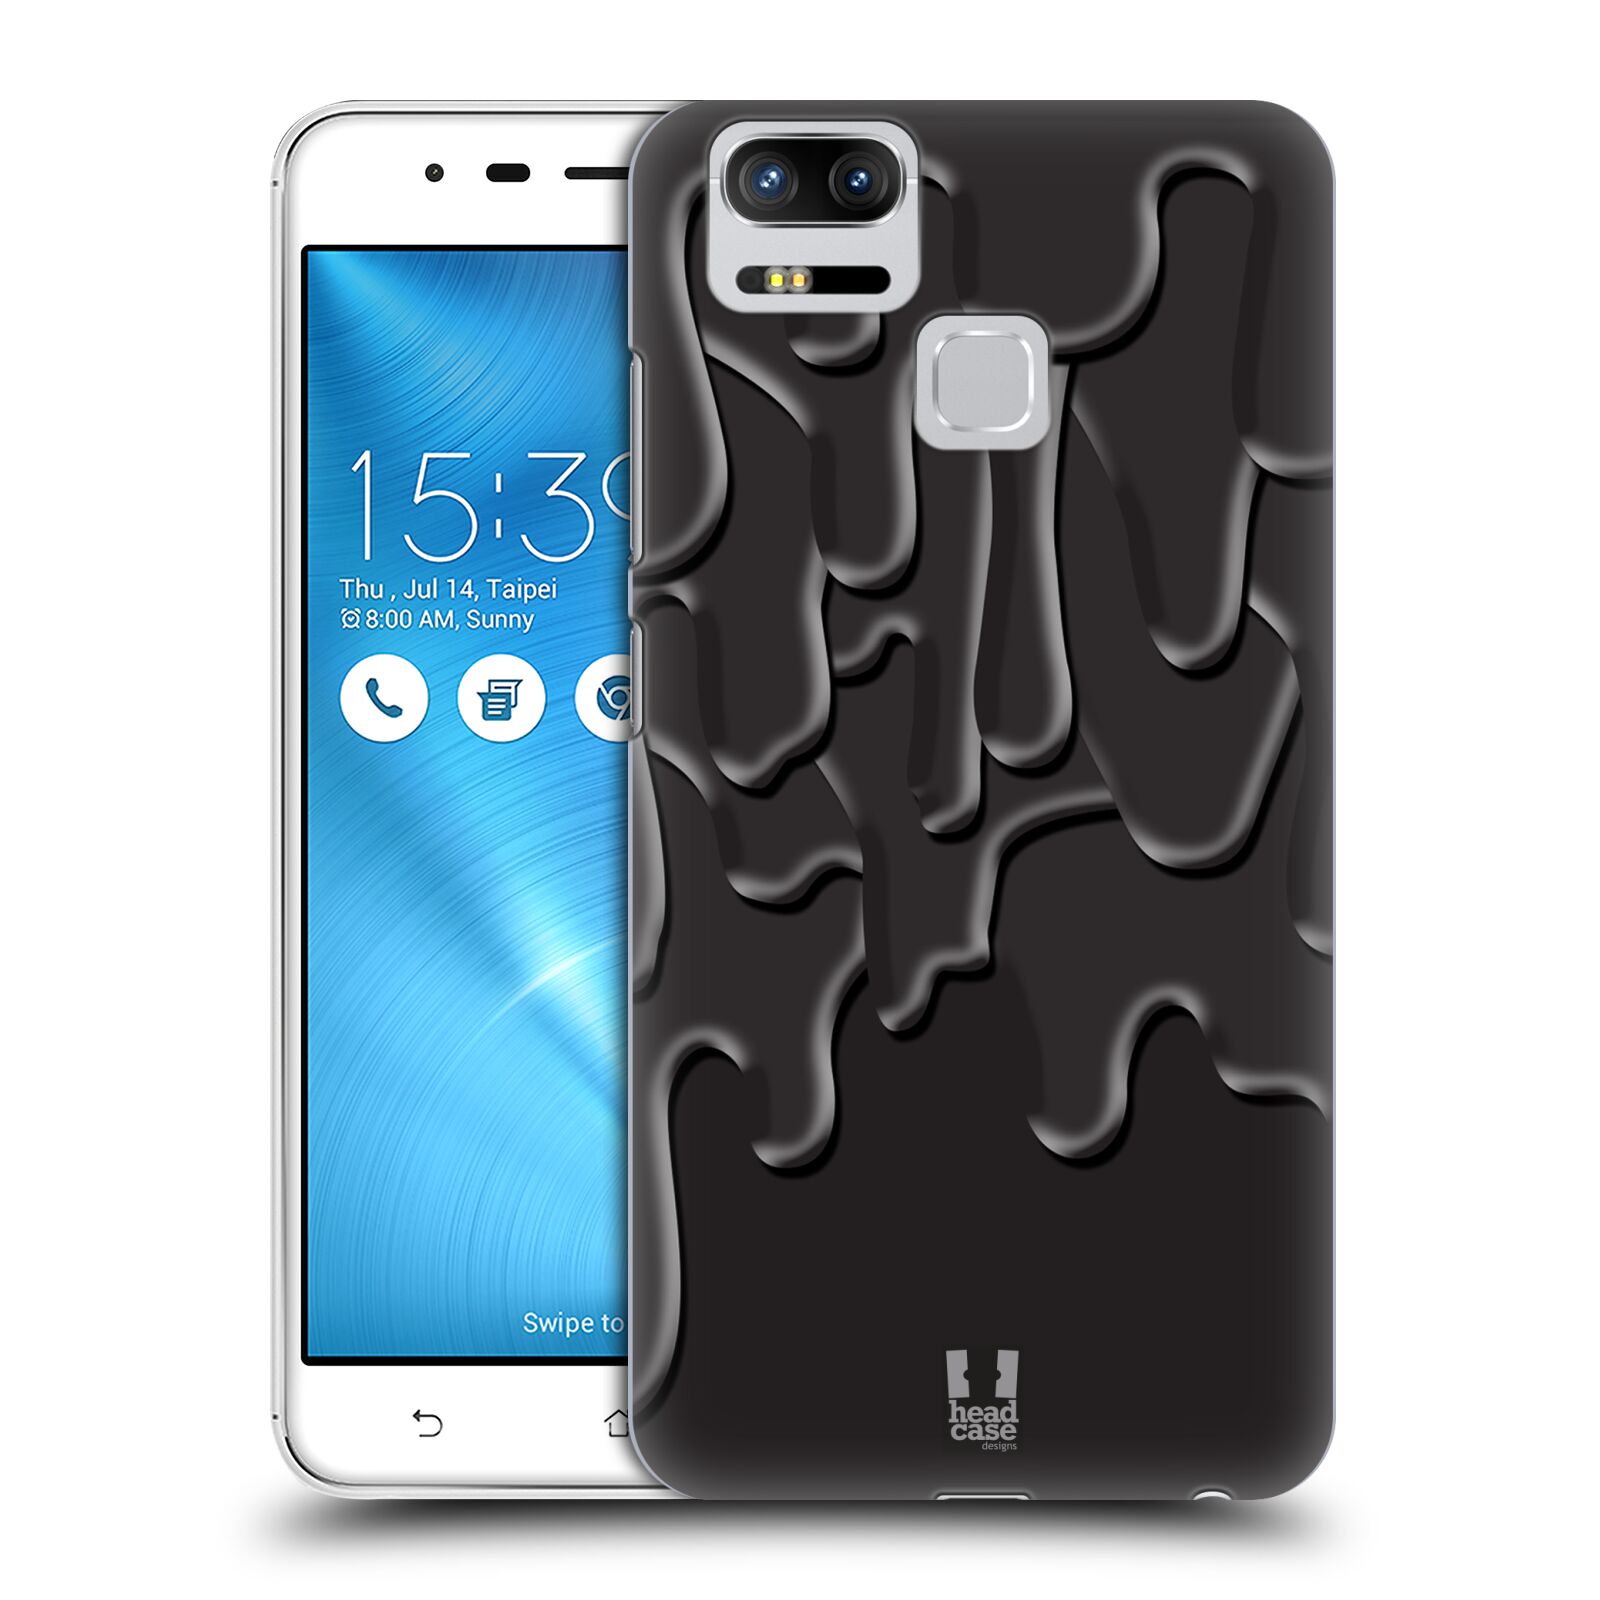 HEAD CASE plastový obal na mobil Asus Zenfone 3 Zoom ZE553KL vzor Barevná záplava ČERNÁ